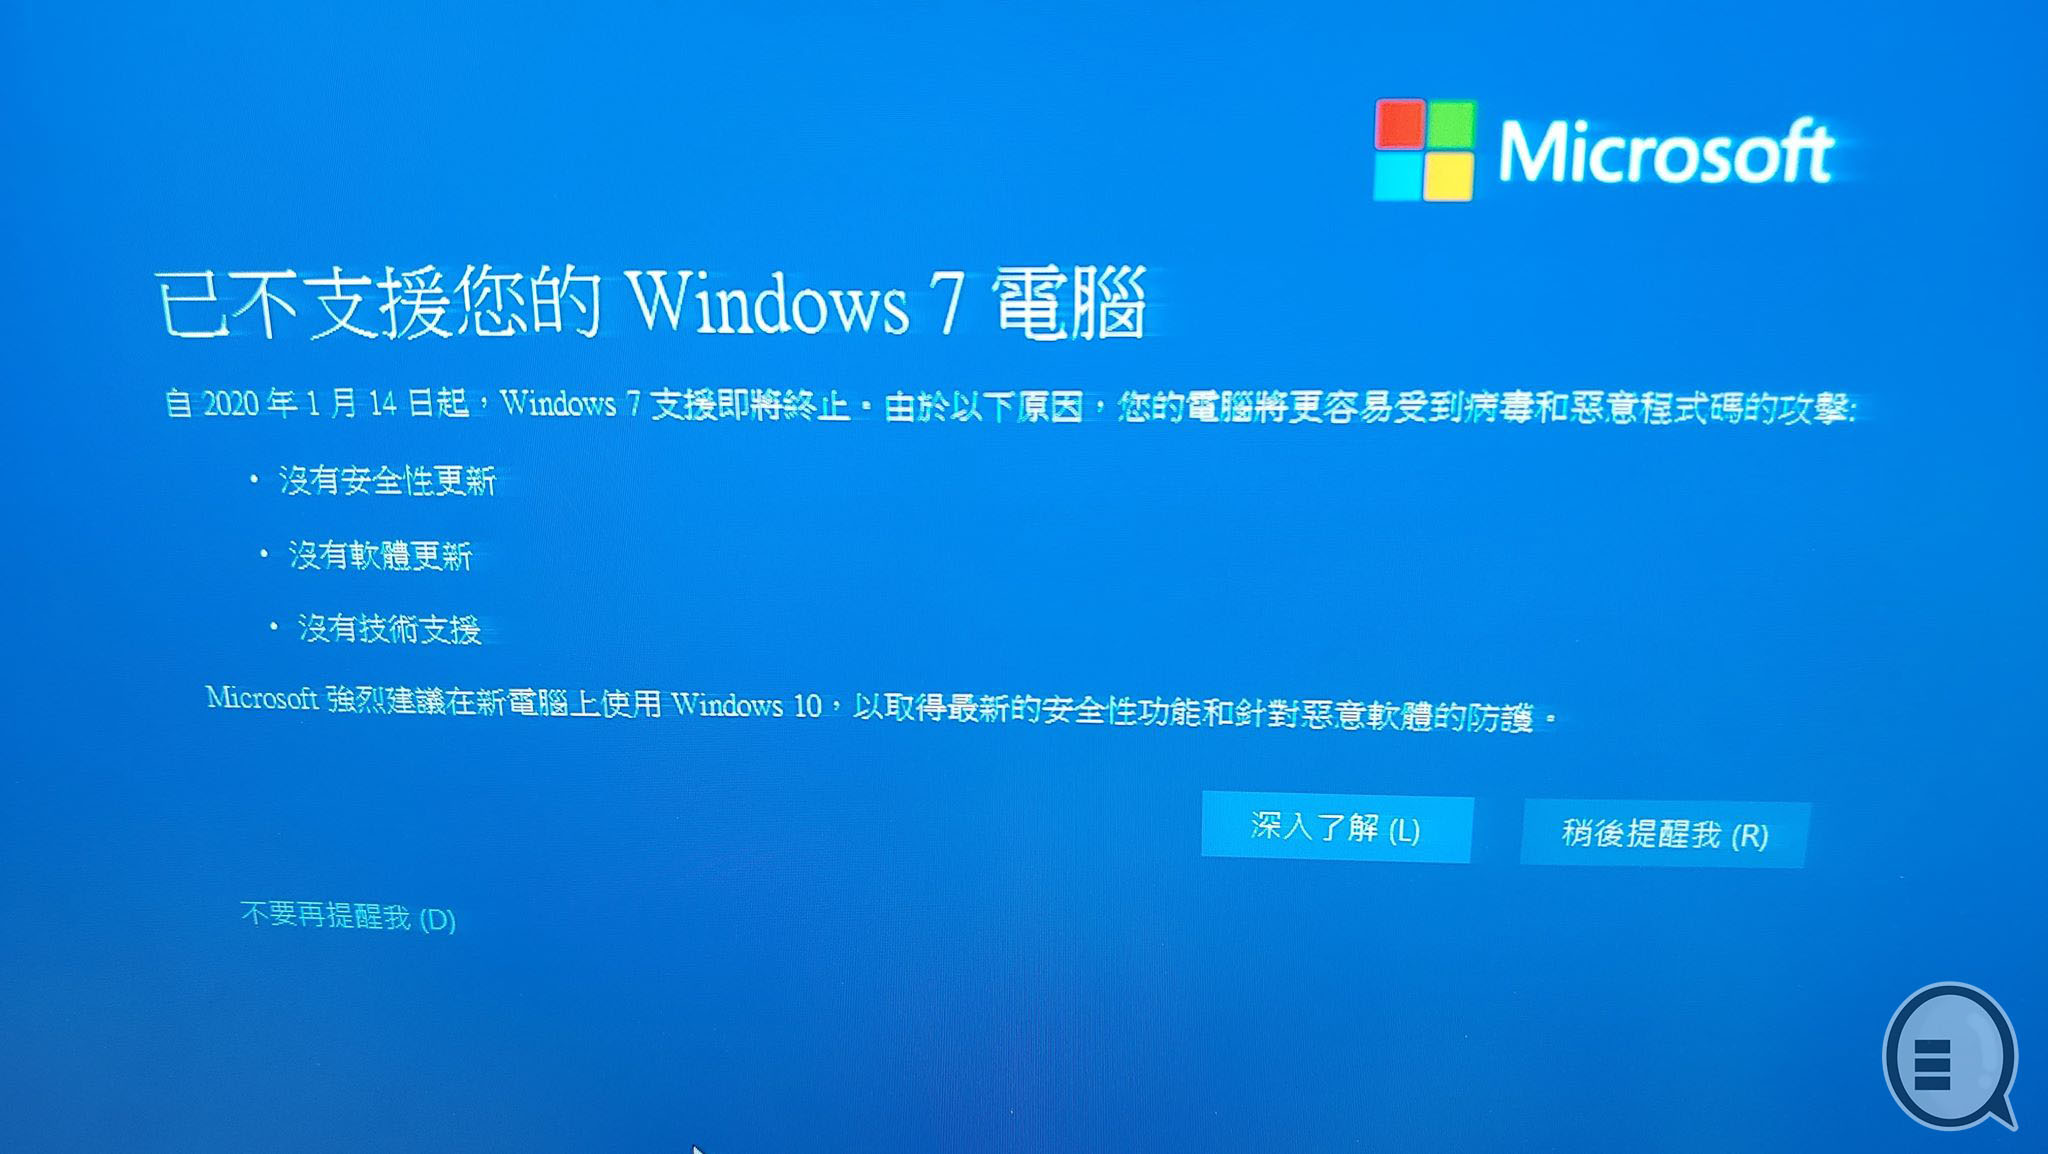 弹全屏画面凶人逼升级：Windows 7 正式停止技术支援！(附免费升级)(1)